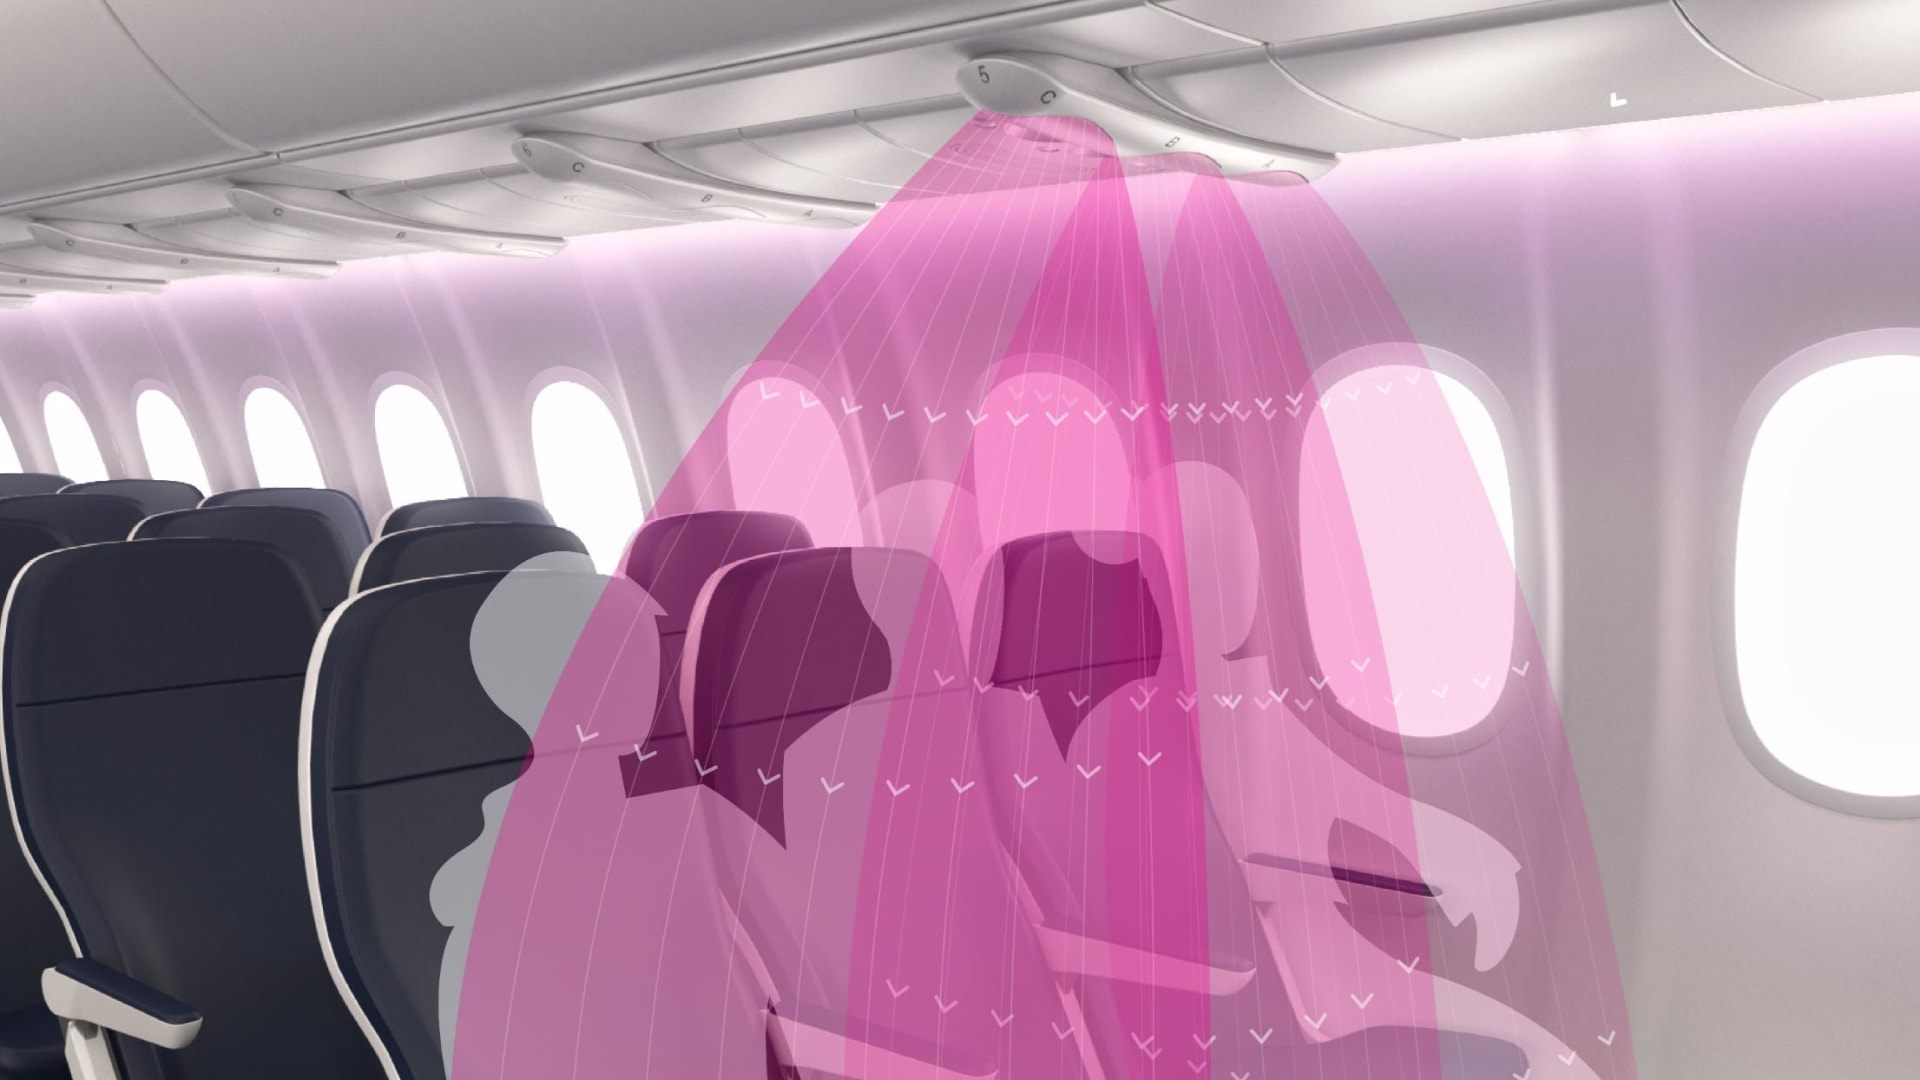 شركات الطيران تعاني مع المقاعد المزدحمة.. كيف سيكون شكل السفر في المستقبل؟